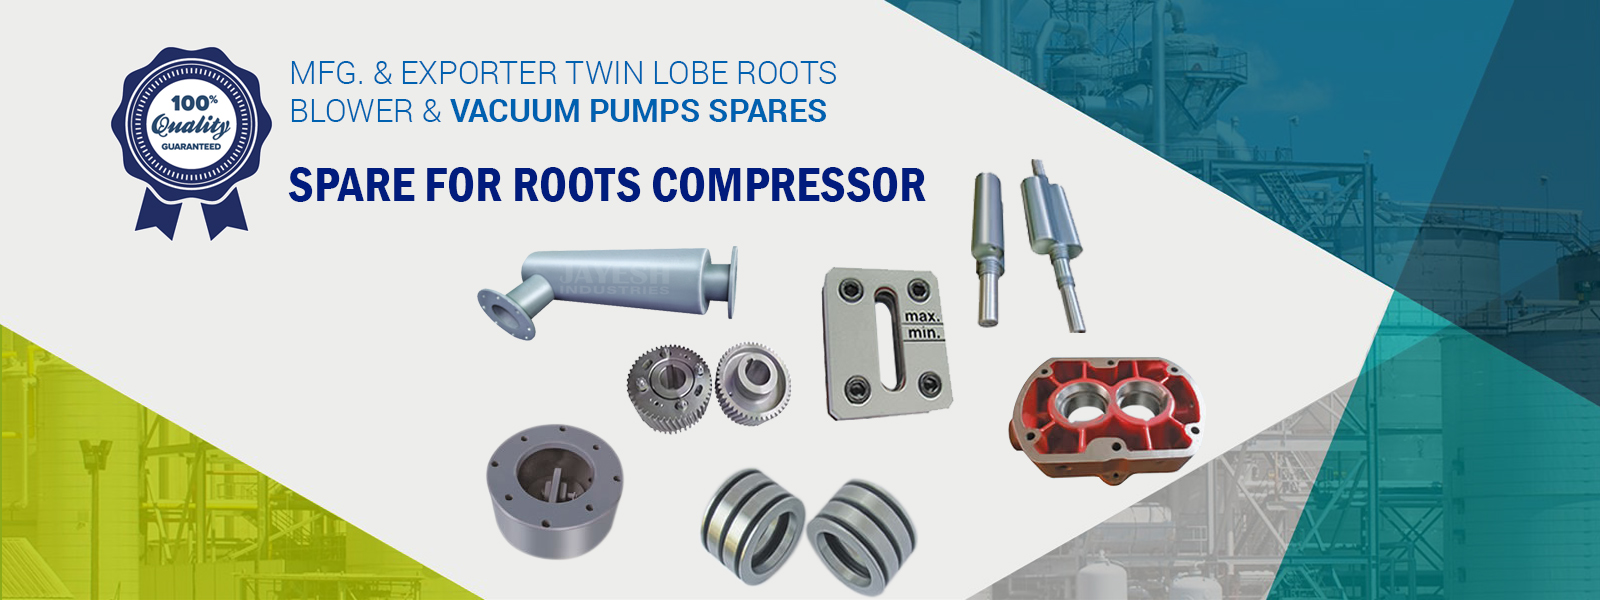 Spare for roots compressor manufacturer